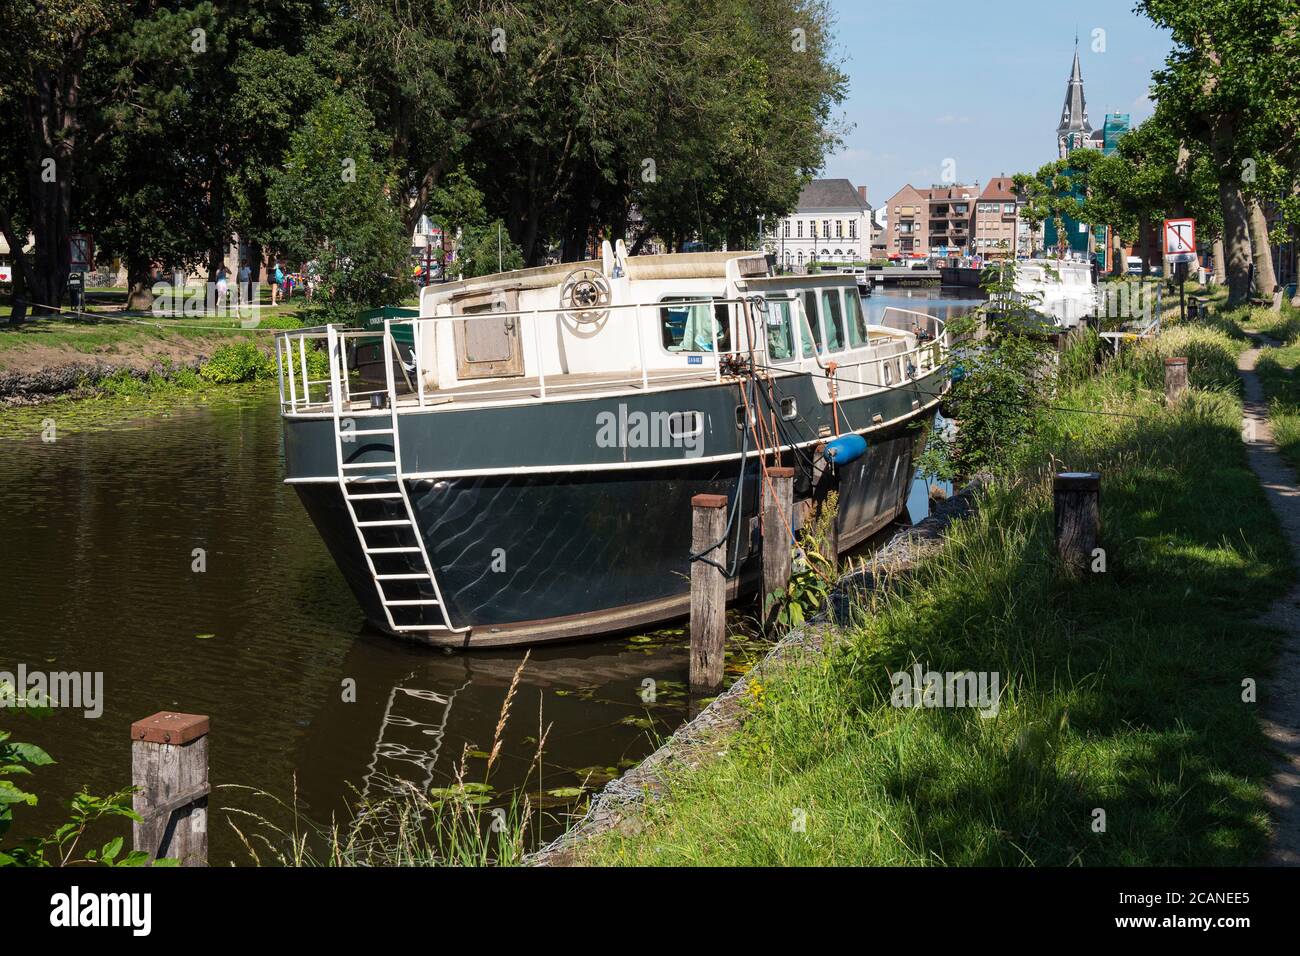 Lokeren, Belgique, le 13 juillet 2020, bateau démodé et abandonné amarré sur la rivière dans le centre de la ville Banque D'Images